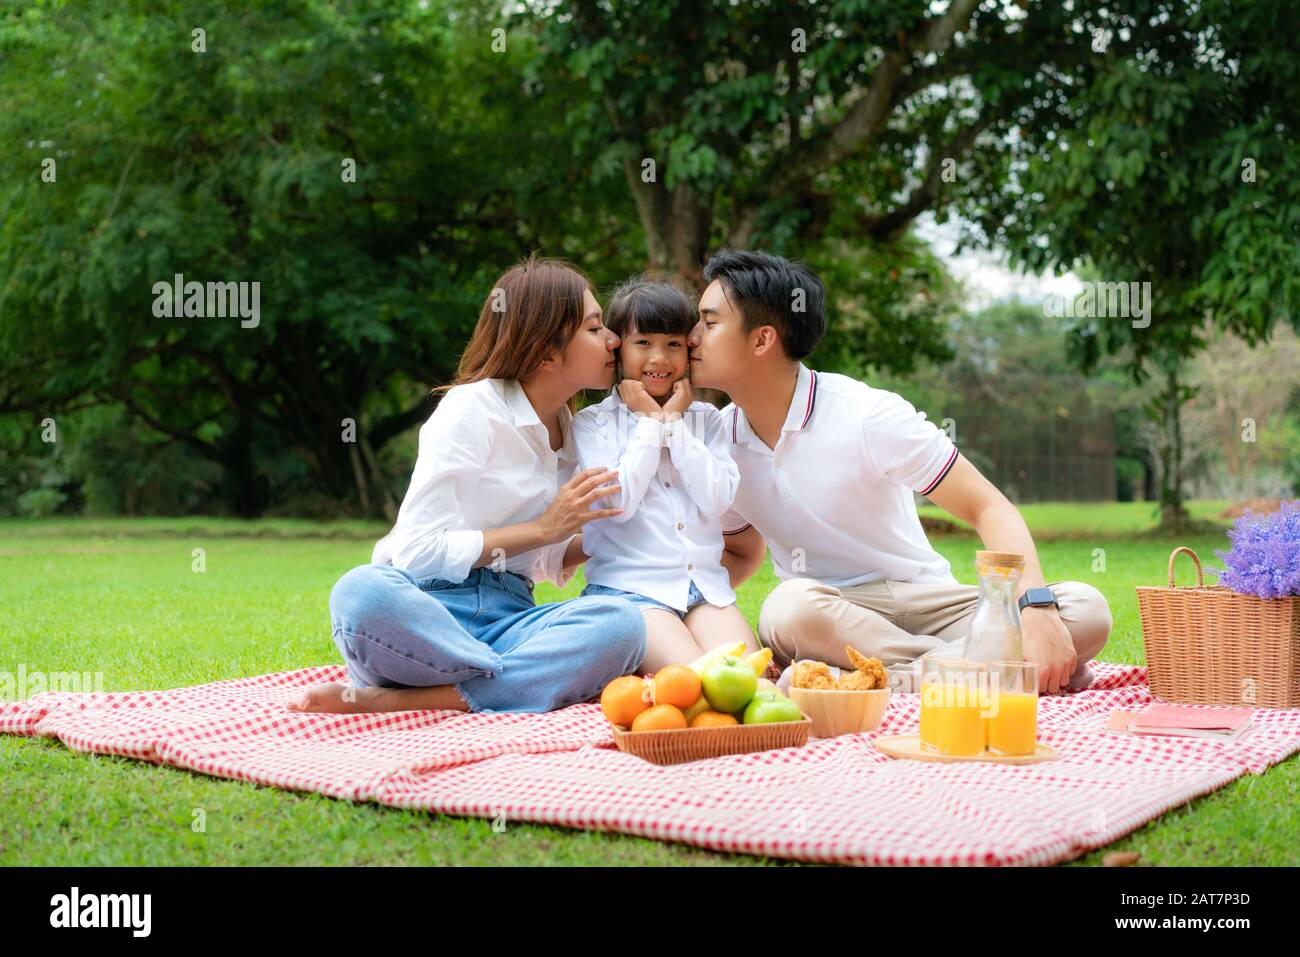 Asiatische Teenager Familie fröhlicher Urlaub Picknick-Moment im Park mit Vater, Mutter küssende Tochter mit Blick auf Kamera und Lächeln, um einen glücklichen Urlaub zu verbringen tim Stockfoto